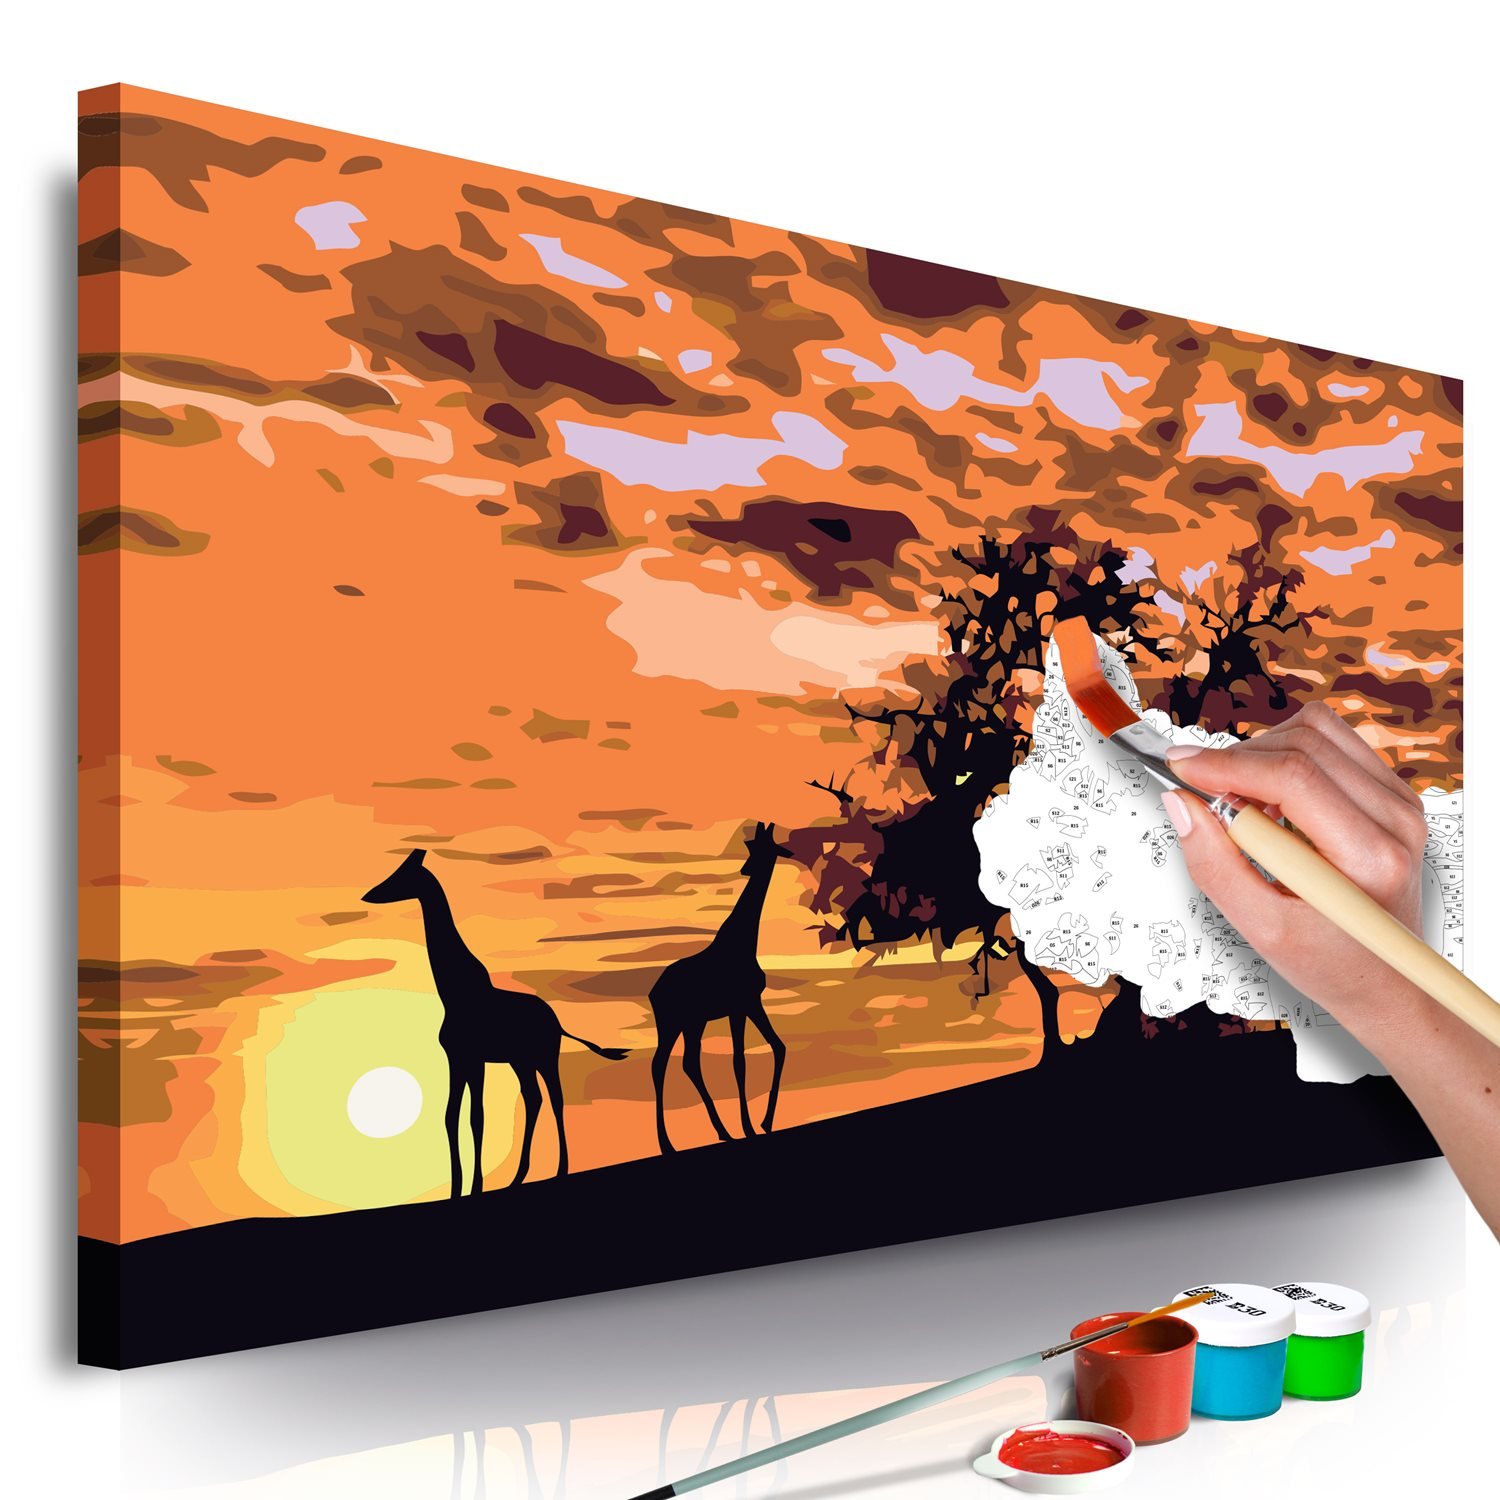 Πίνακας για να τον ζωγραφίζεις – Savannah (Giraffes Elephants) 60×40